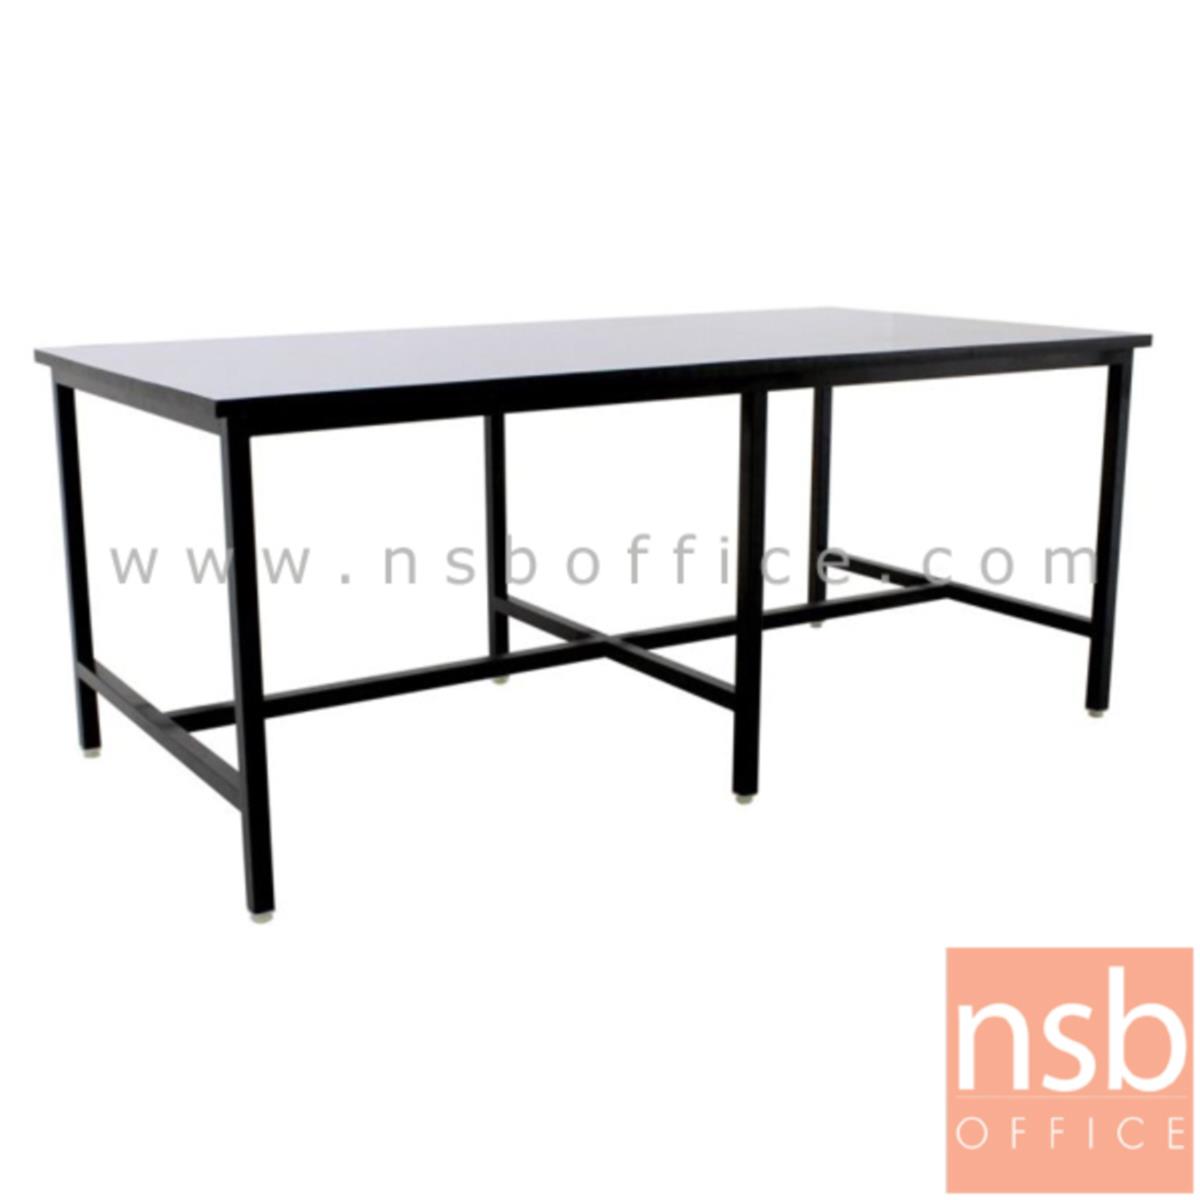 A35A010:โต๊ะโรงอาหารหน้าโฟเมก้าขาว  ขนาด 120W, 150W, 180W cm.  โครงขาเหล็กดำ